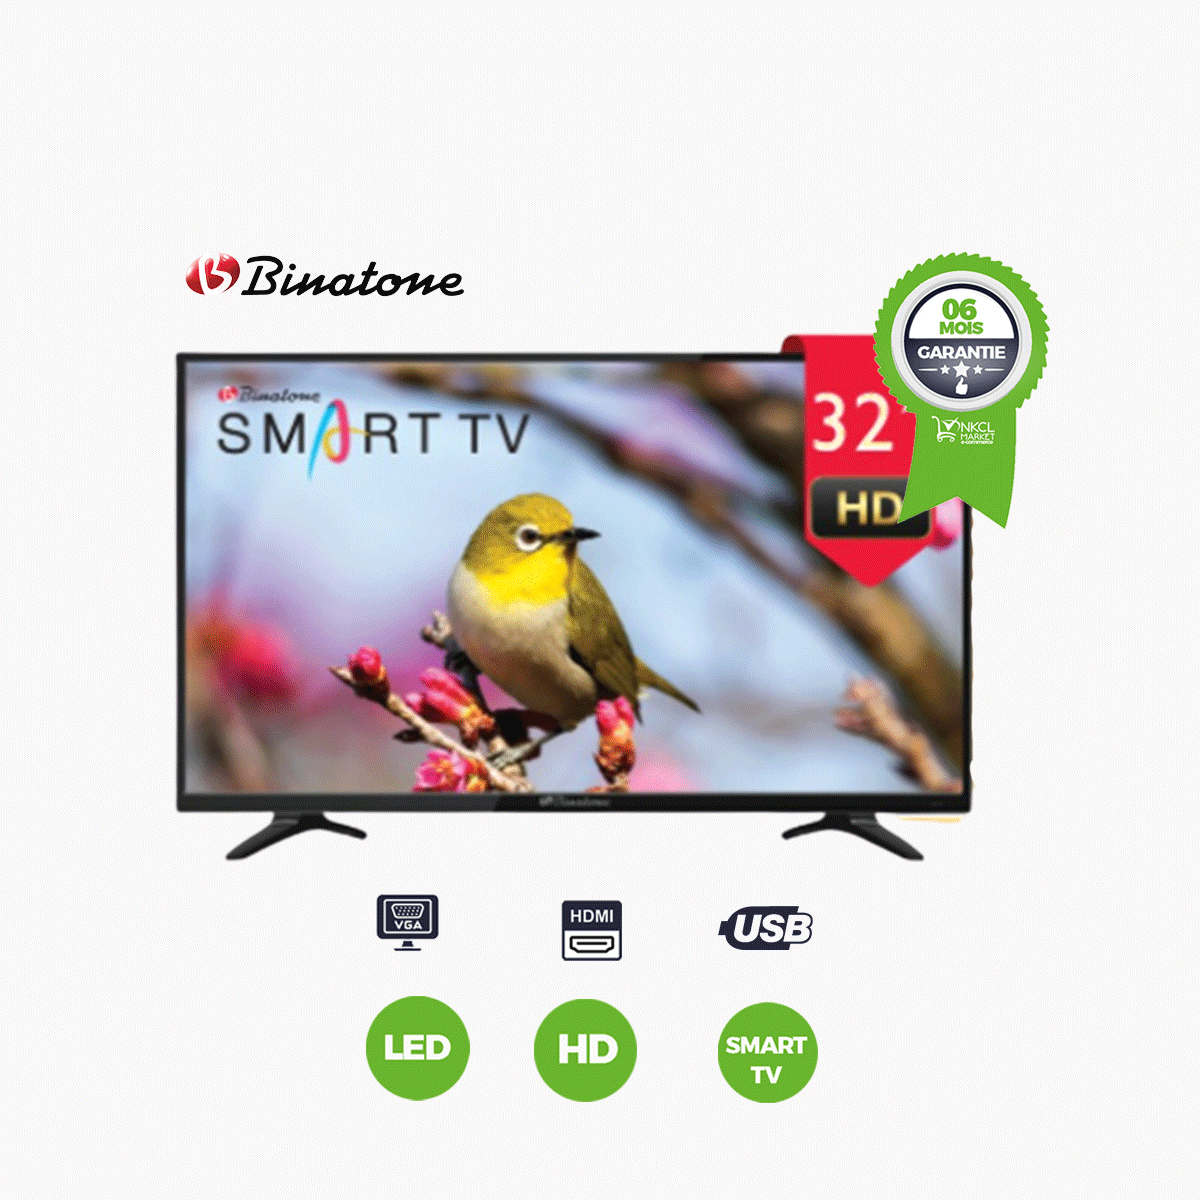 smart-tv-binatone-32-btvs-32hdt2s2-garantie-12-mois